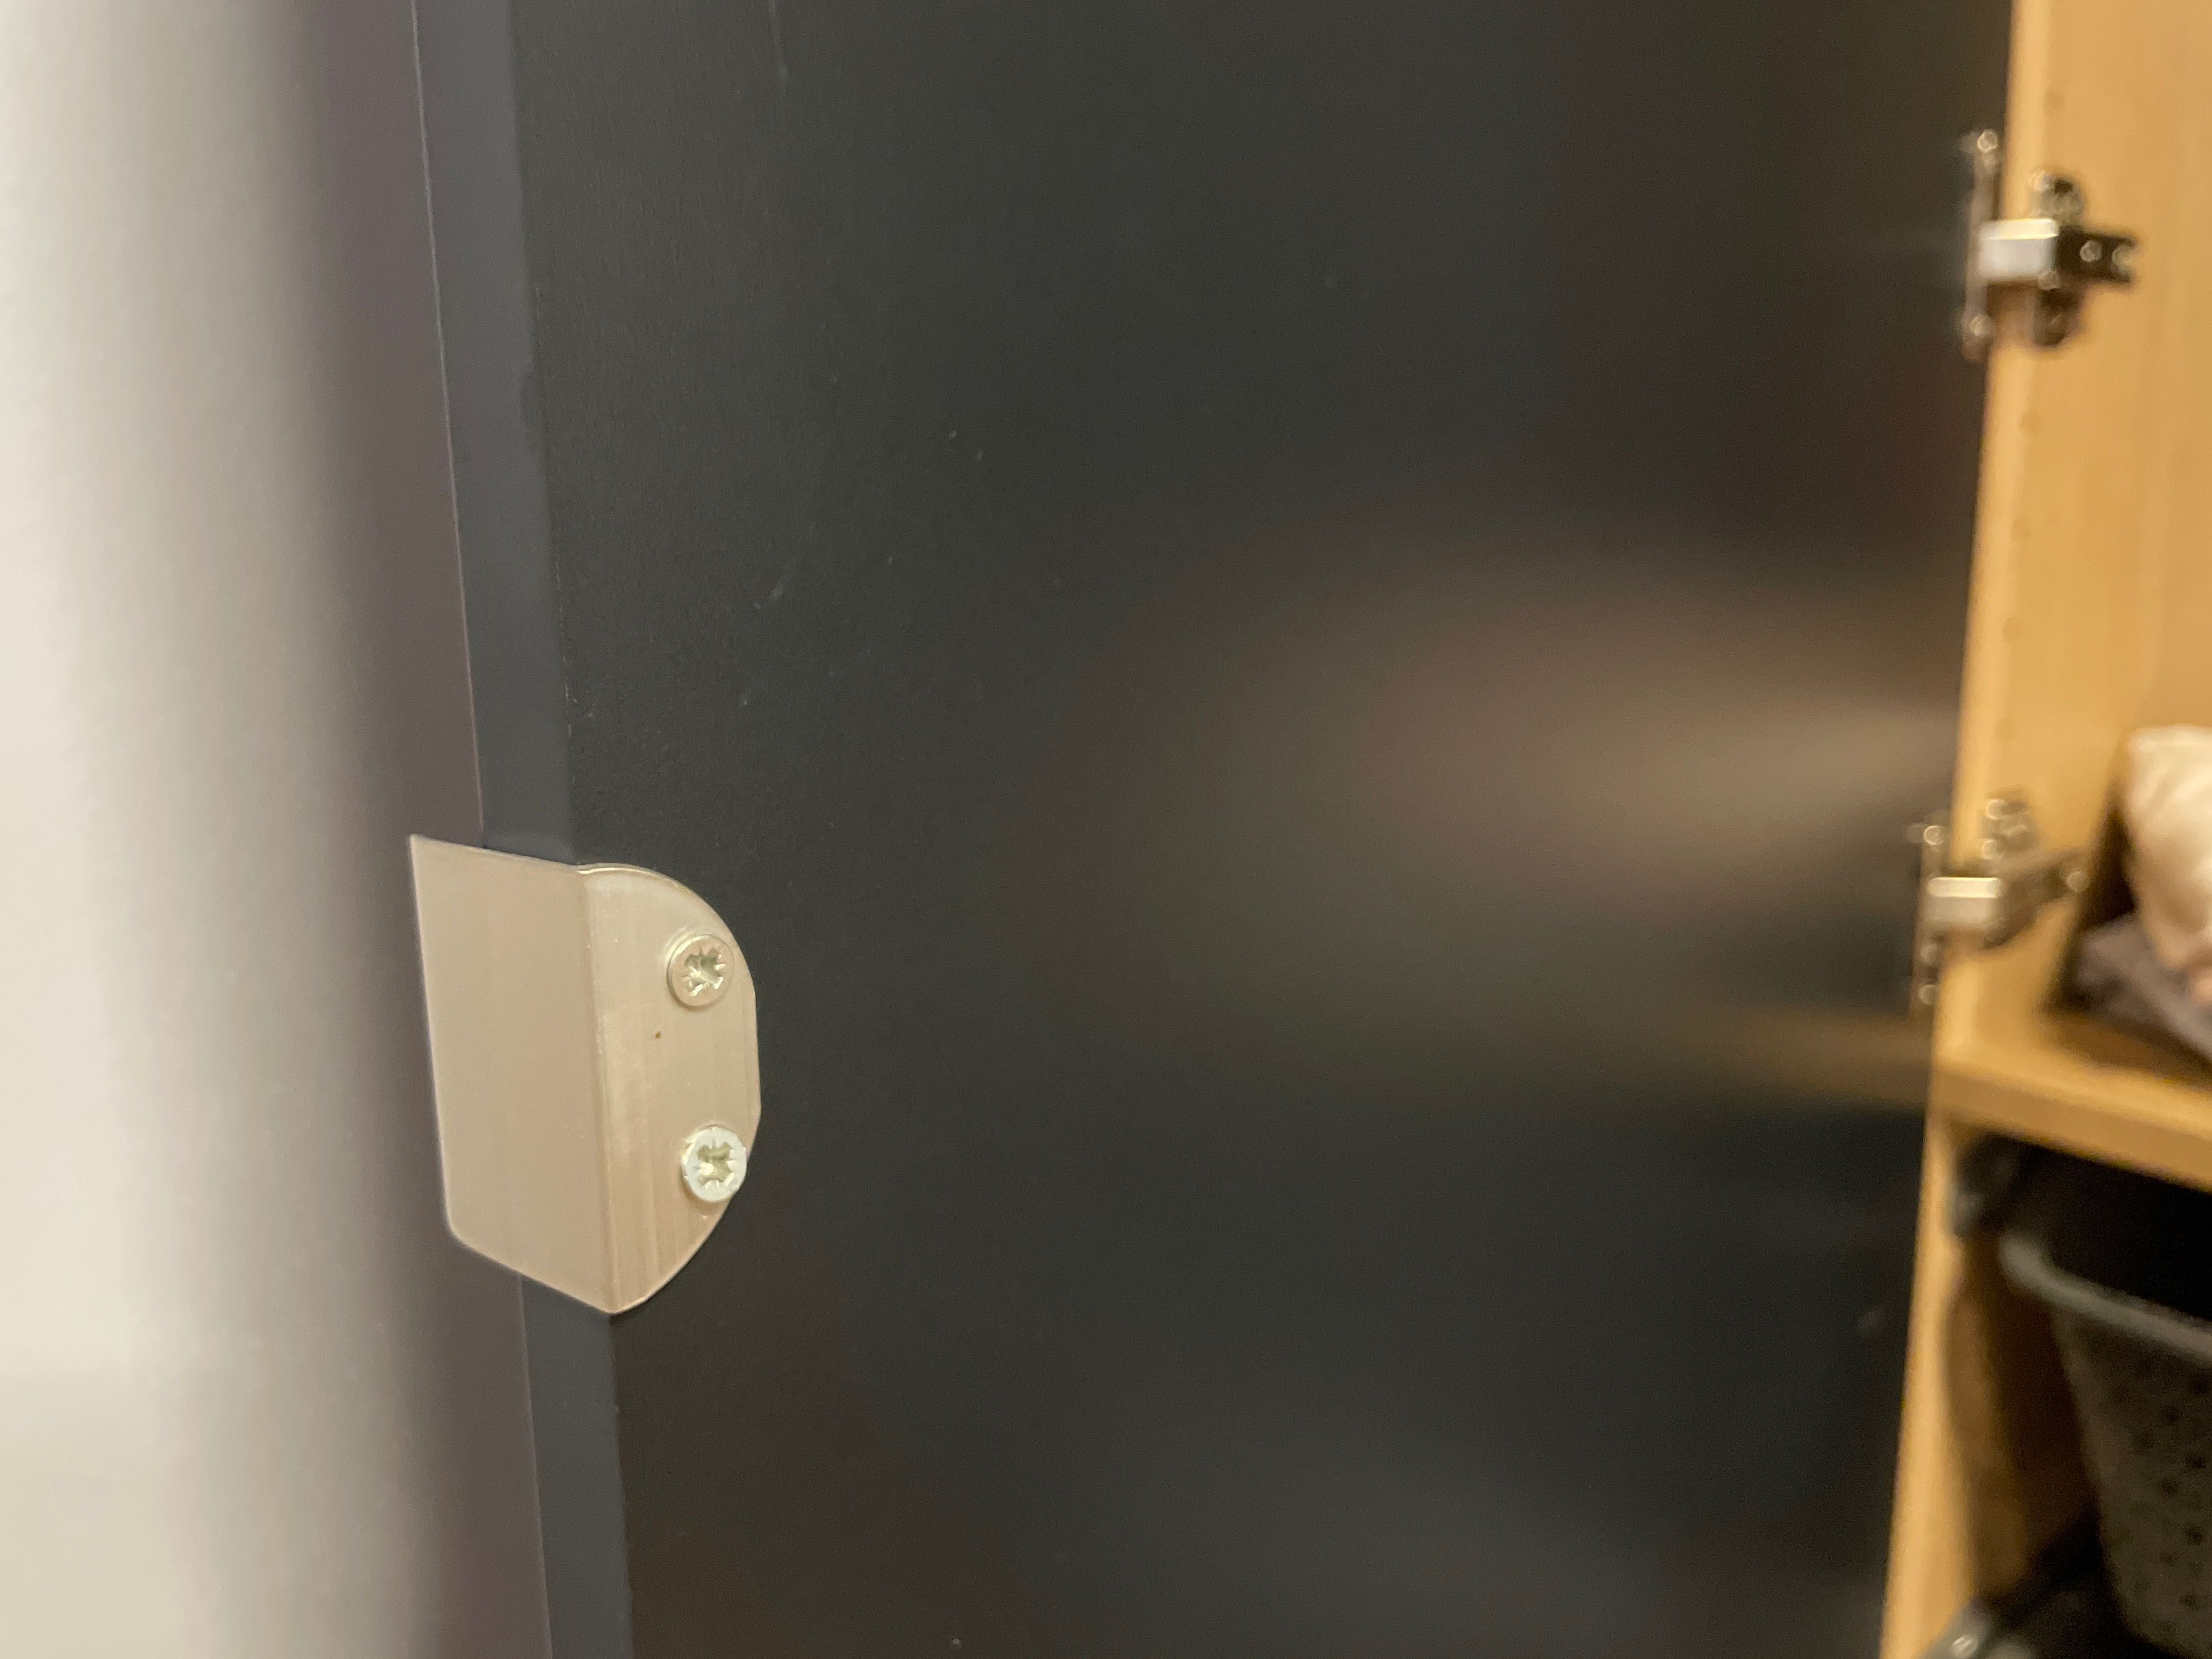 Ikea Hamnas drzwi pax granatowe szer.50 cm, wysoki pax, w stylu grimo